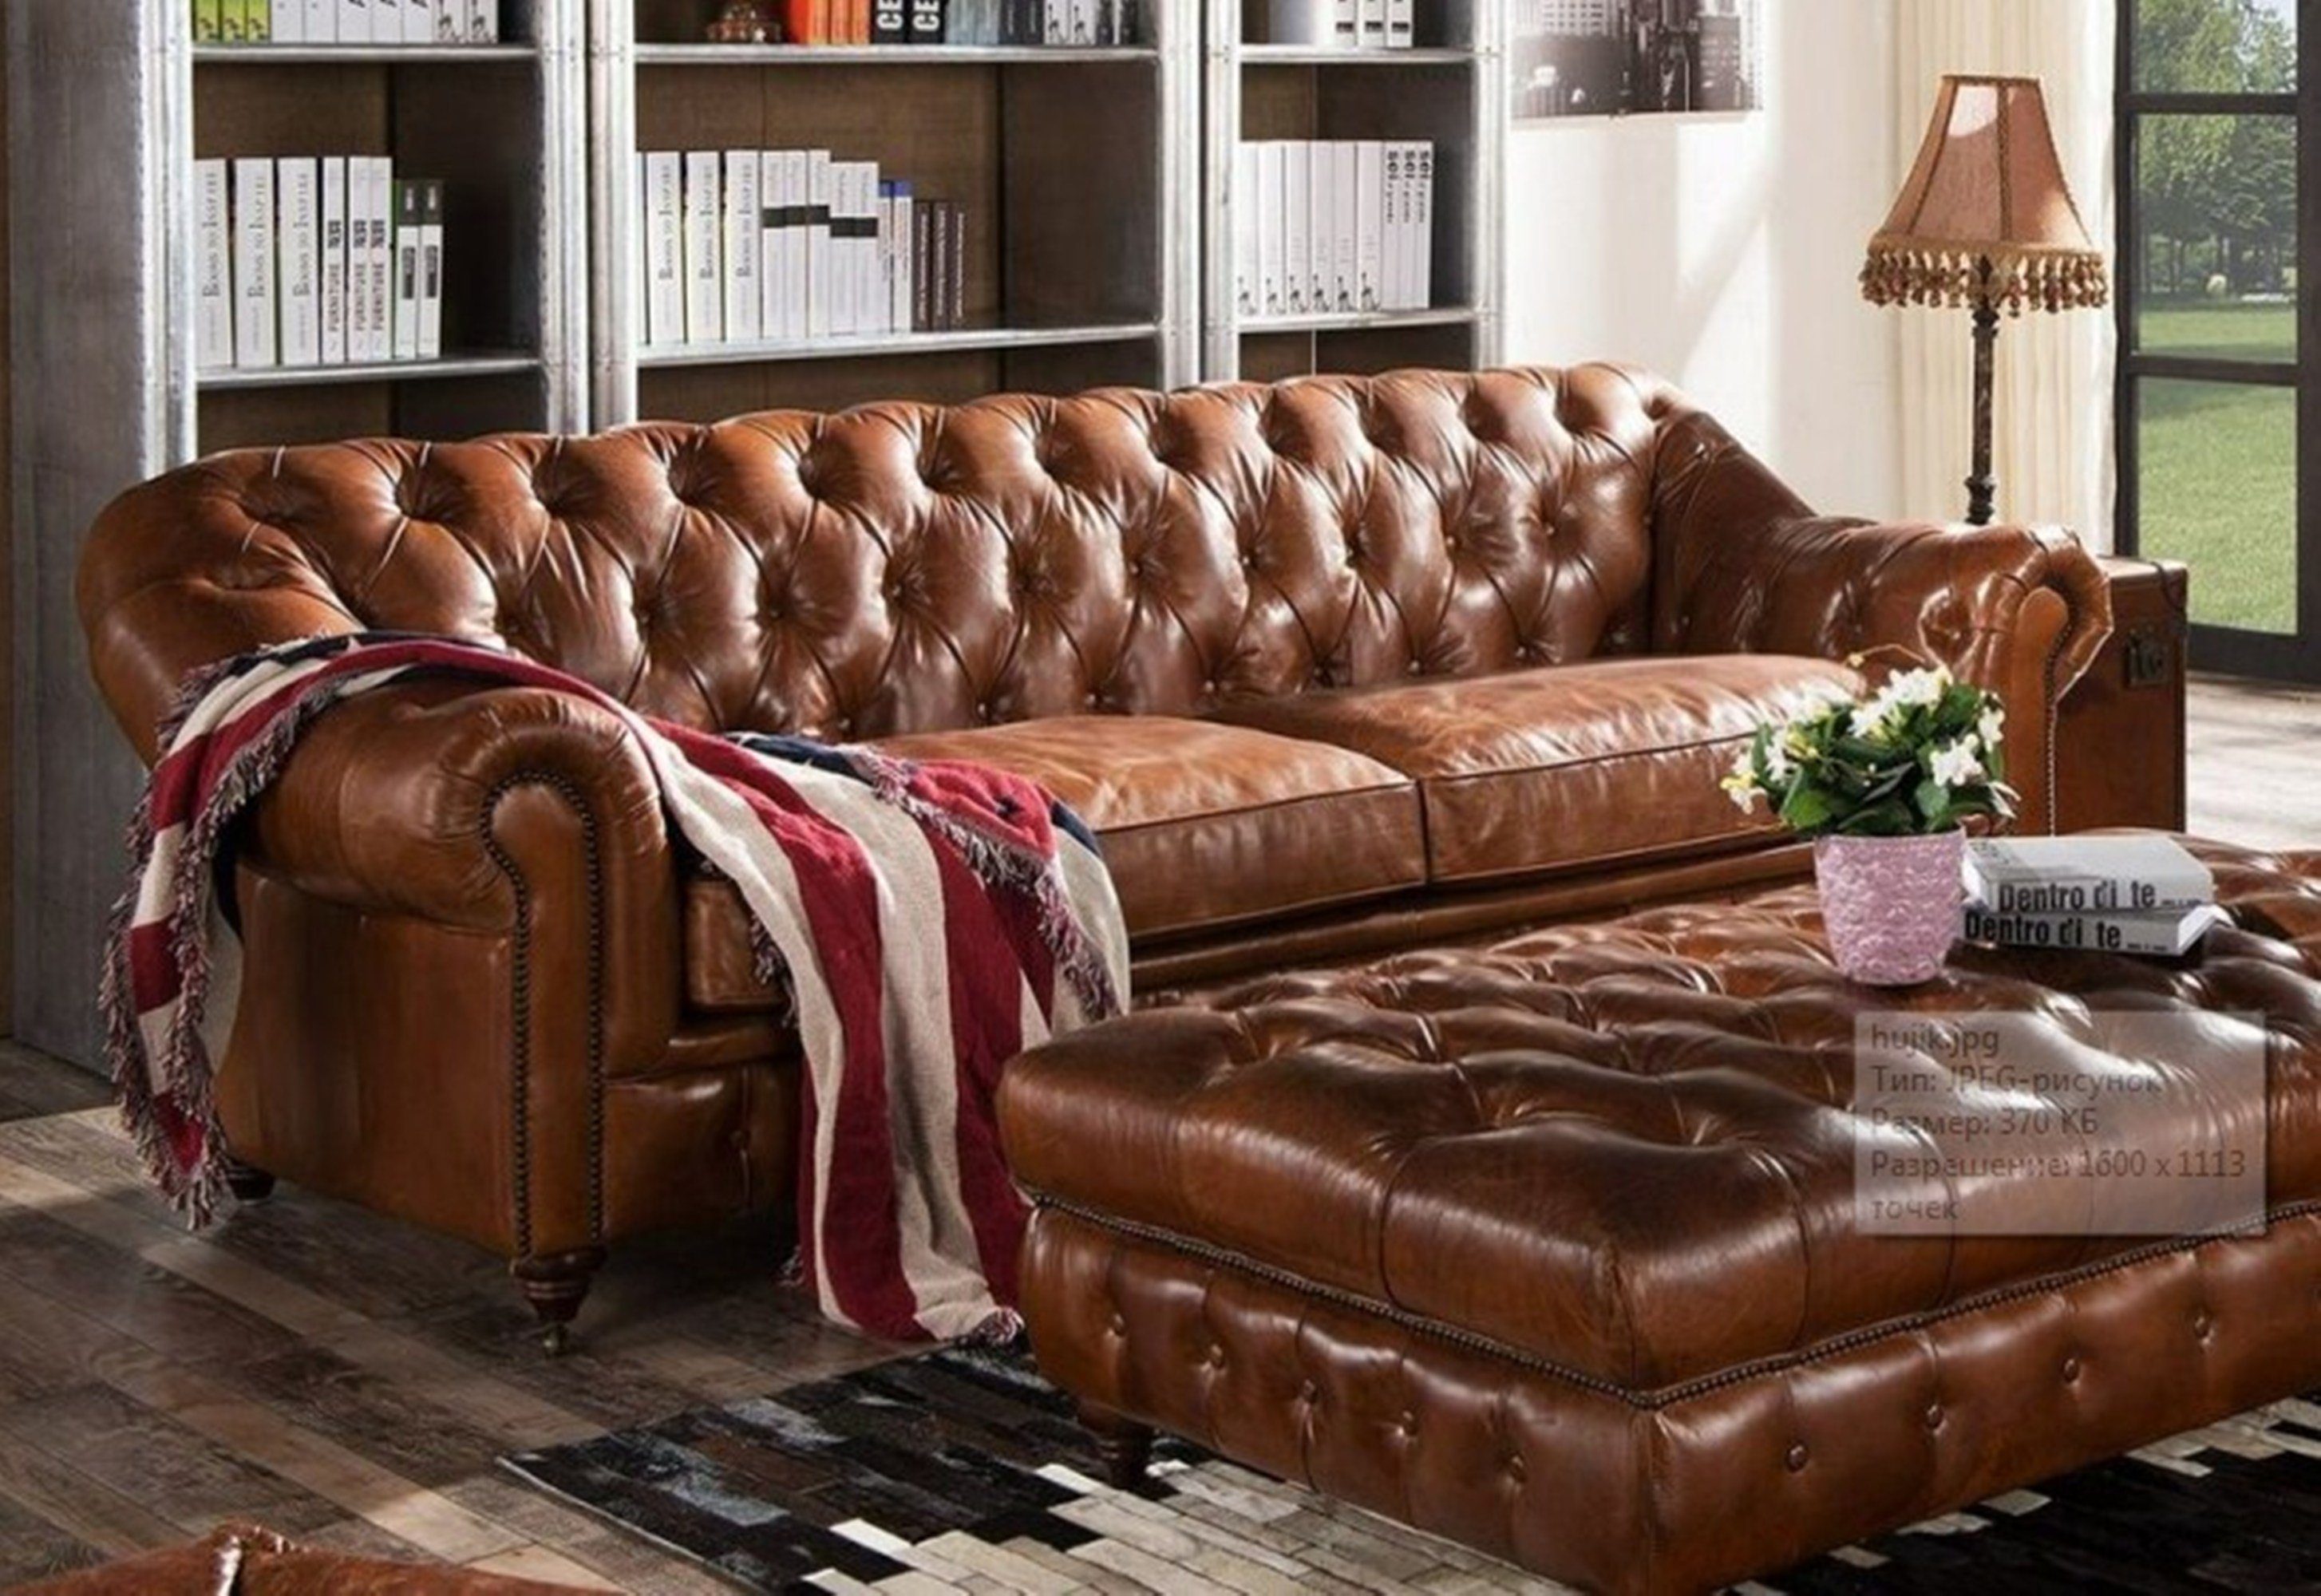 JVmoebel Sofa, Design Chesterfield Dreisitzer 3 Sitzer Leder Couch Polster Sofas